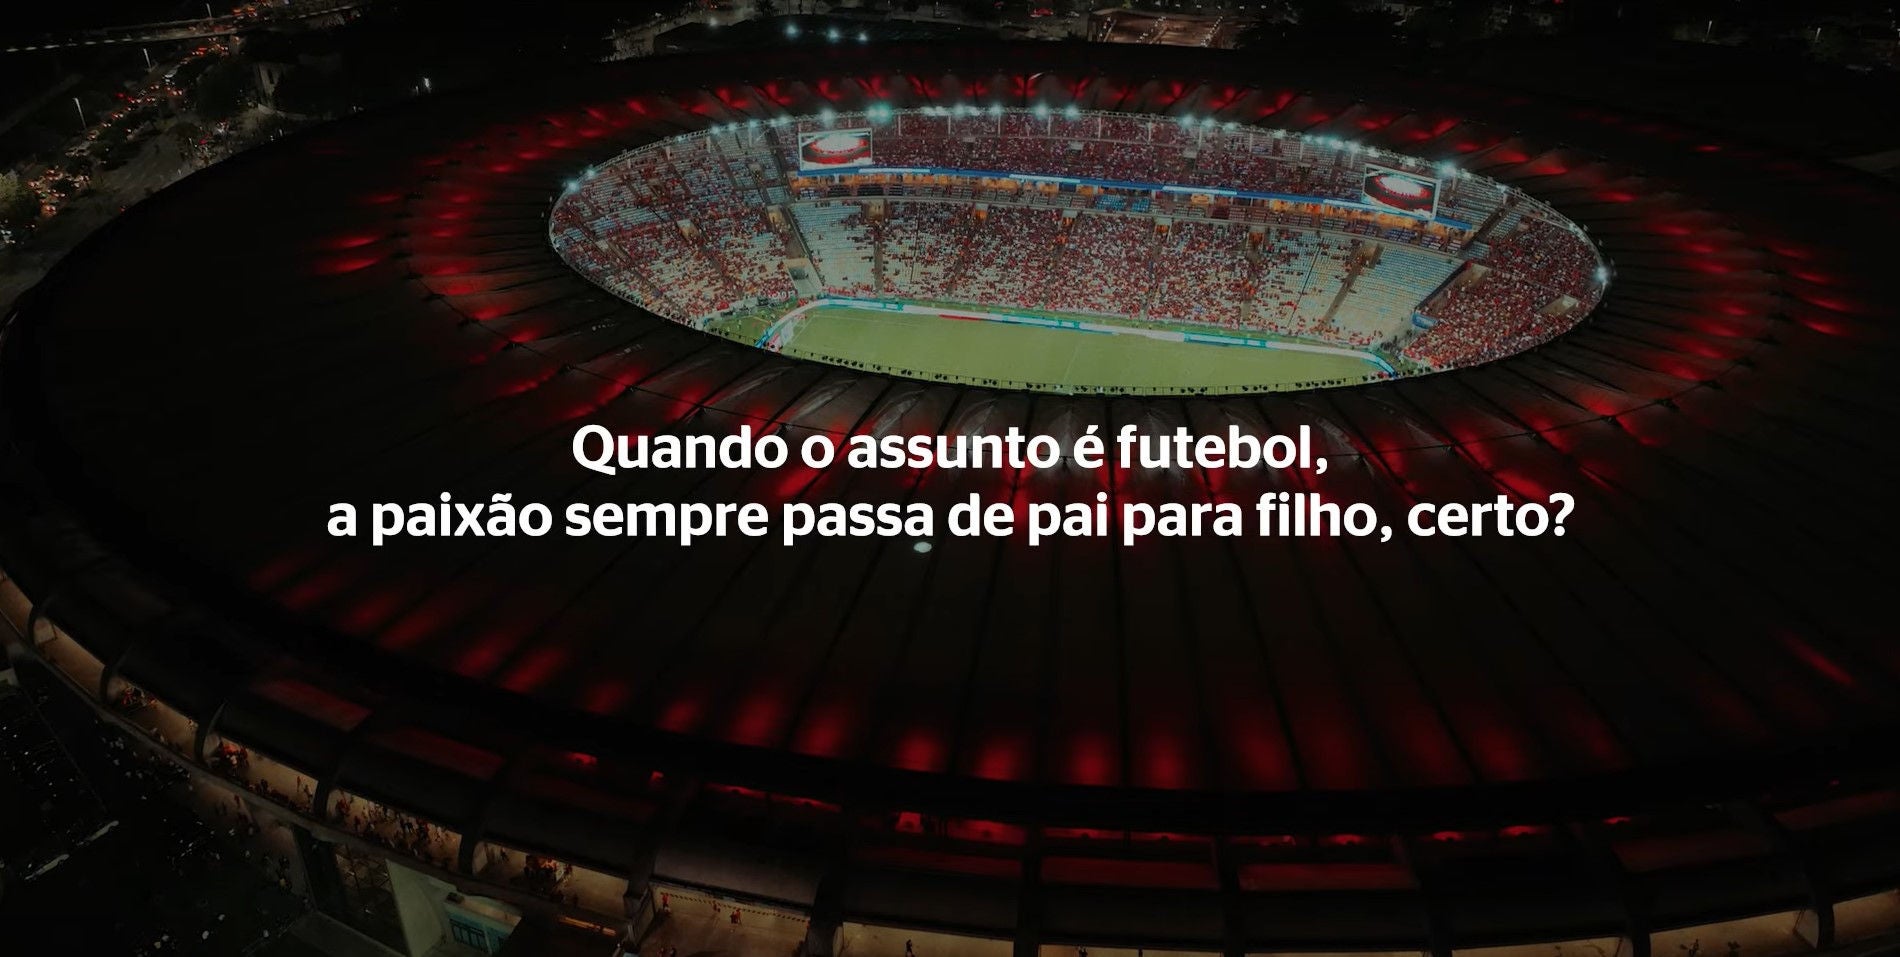 (imagem aérea do estádio a noite com texto "Quando o assunto é futebol a paixão sempre passa de pai para filho, certo?" sobreposto em branco)